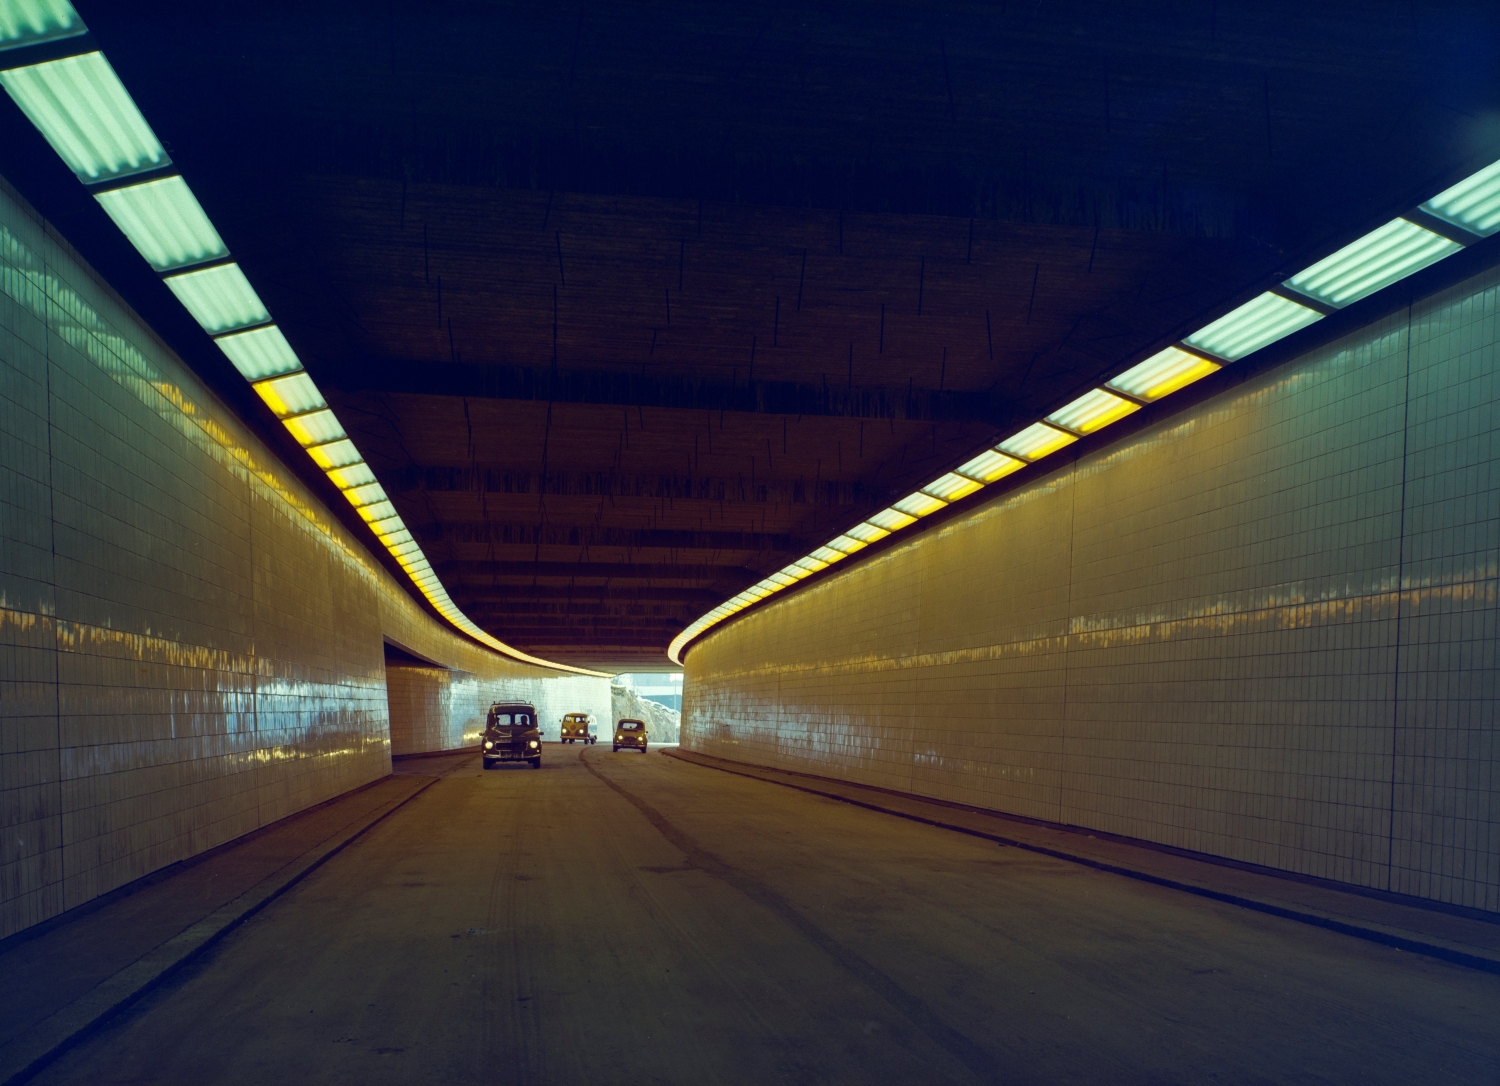 Näkymä tunnelista, jossa ajaa kolme autoa. Tunnelin seinät on päällystetty kiiltävillä kaakeleilla. Katon reunoilla on kaksi valaistusvyöhykettä.